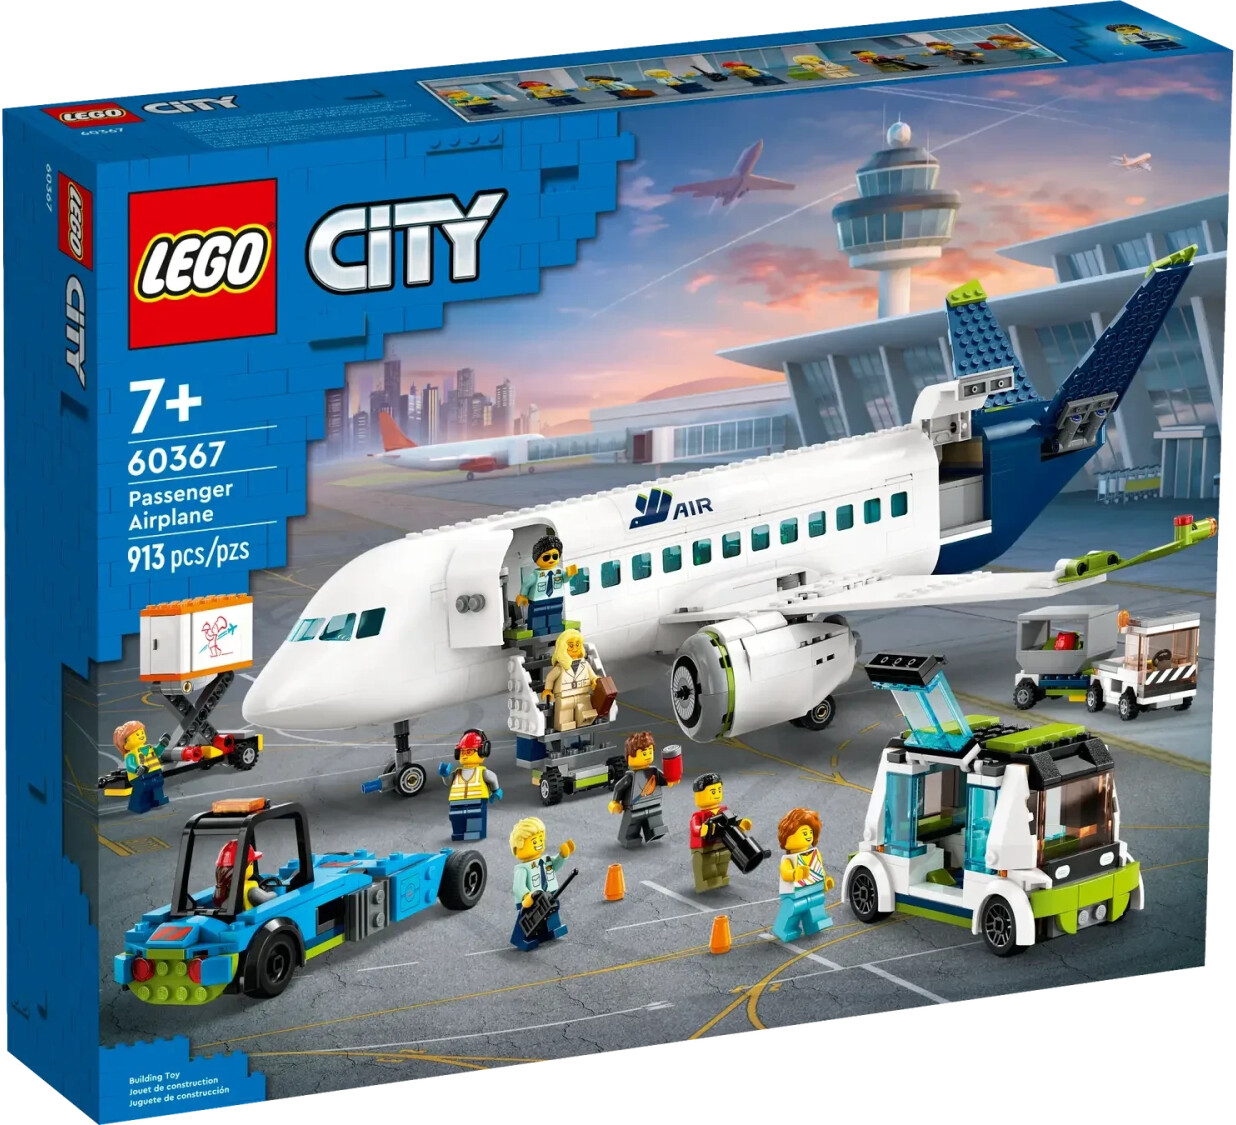 L'avion supersonique - LEGO® Creator - 31126 - Jeux de construction